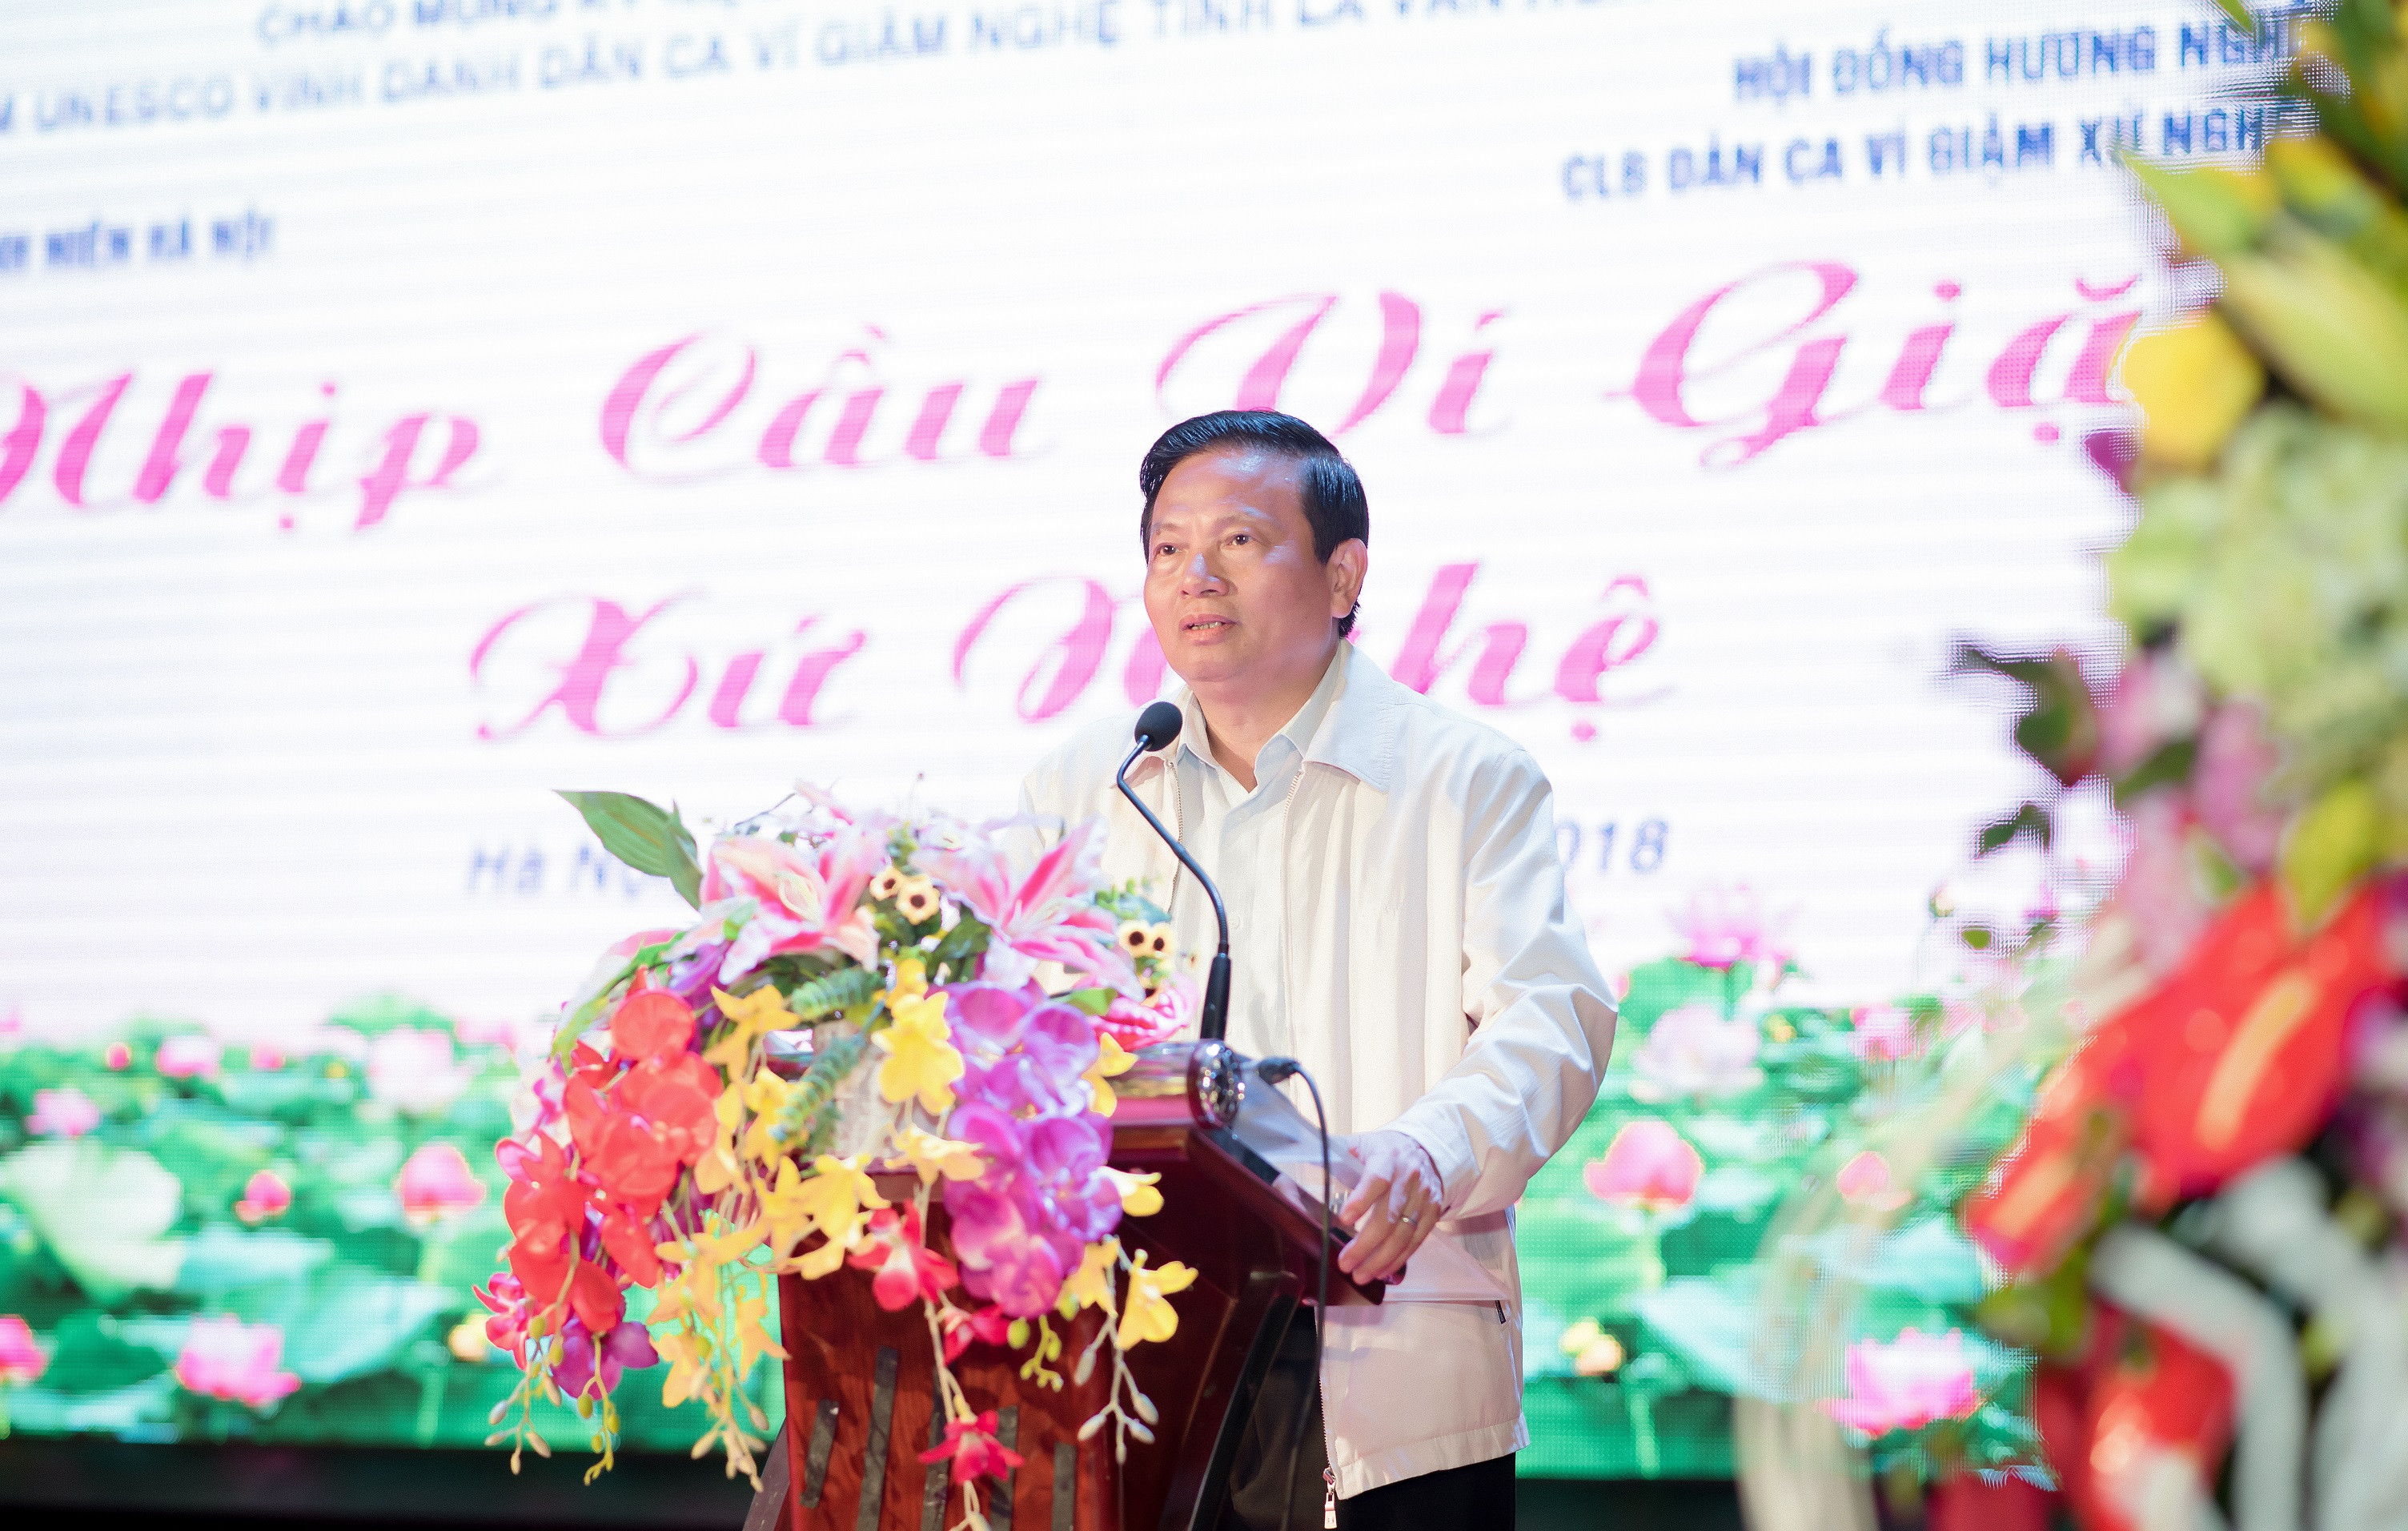 Ông Lê Doãn Hợp - Nguyên Ủy viên Trung ương Đảng, Nguyên Bộ trưởng Bộ Thông tin và Truyền thông, Chủ tịch Hội đồng hương Nghệ An tại Hà Nội phát biểu tại buổi lễ.